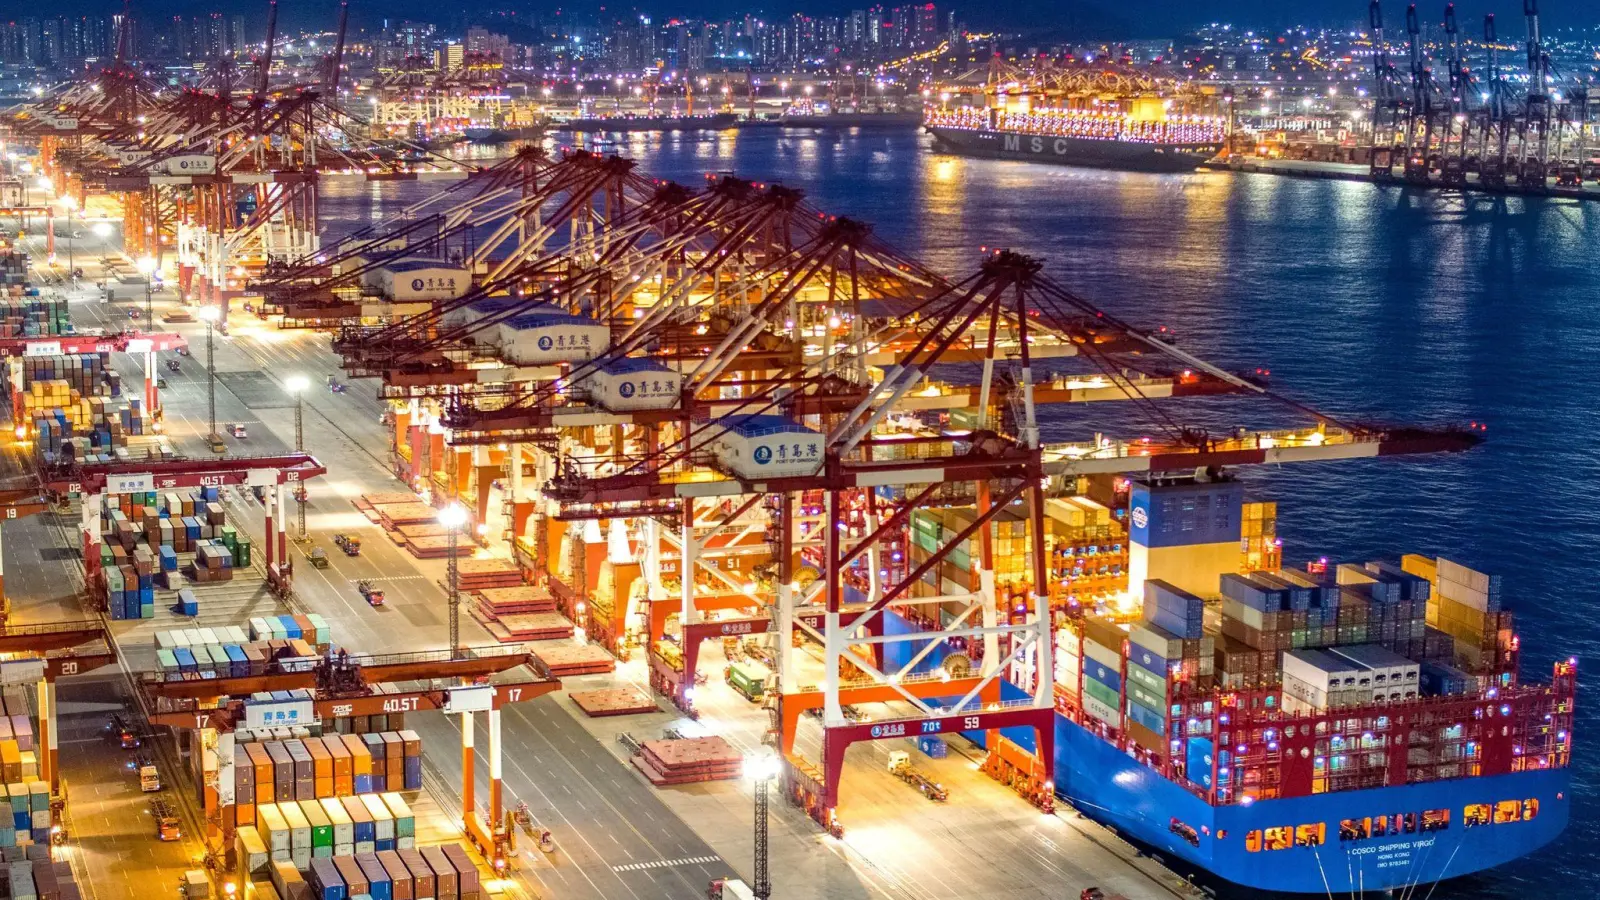 Containerschiffe liegen im nächtlich beleuchteten Containerterminal des Hafens von Qingdao. (Foto: Yu Fangping/SIPA Asia via ZUMA Wire/dpa)